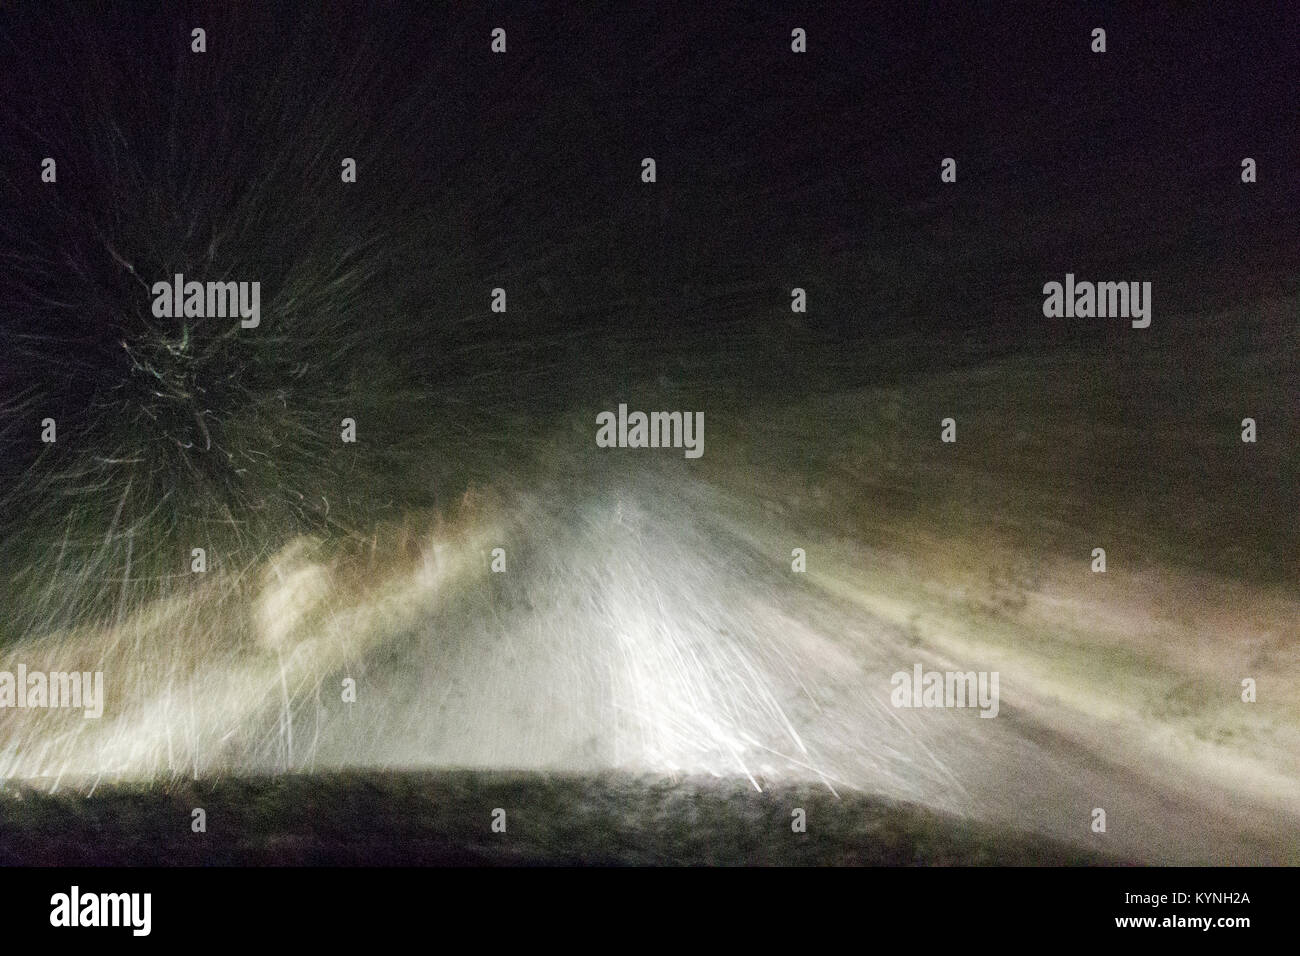 Schlechte Fahrbedingungen auf einer ländlichen Straße während eines Schneesturms in der Nacht. Yorkshire, UK. Stockfoto